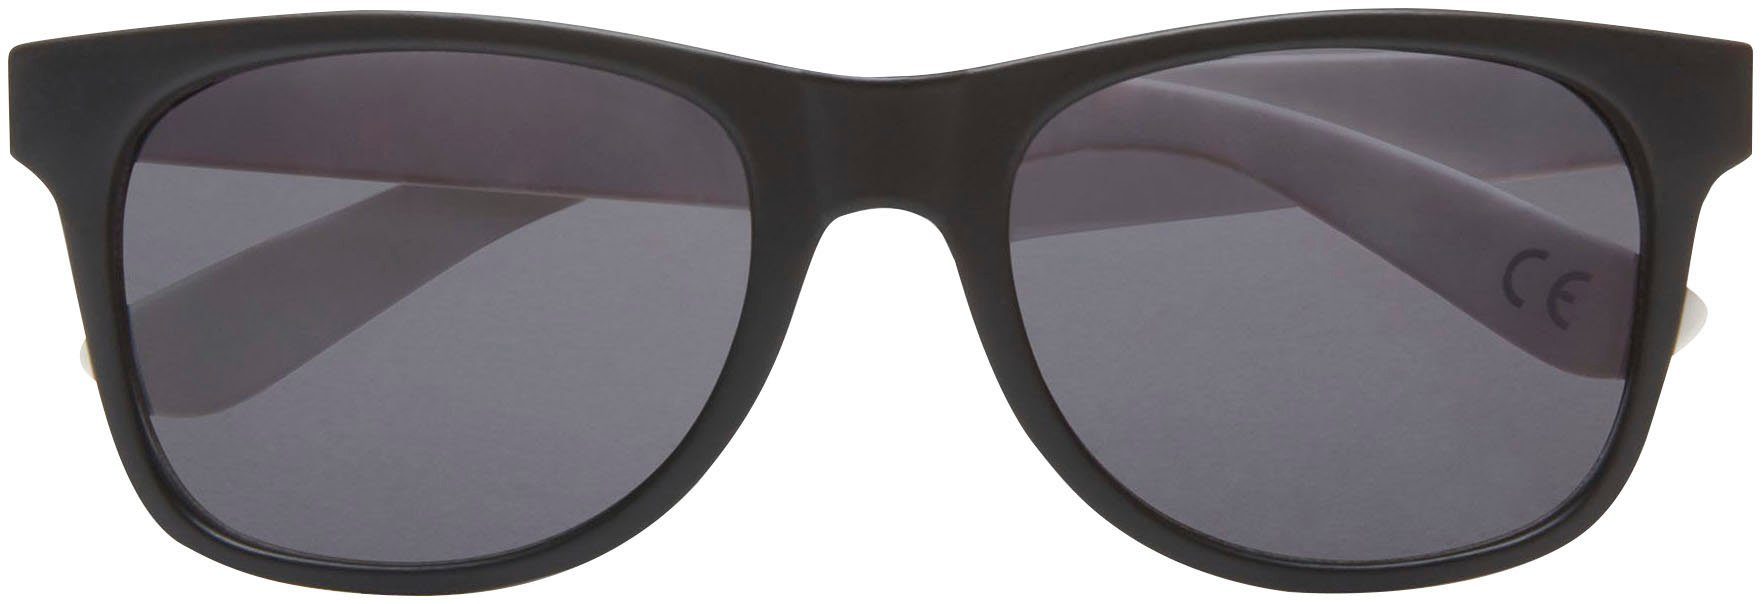 Vans Sonnenbrille »SPICOLI 4 SHADES« online kaufen | OTTO